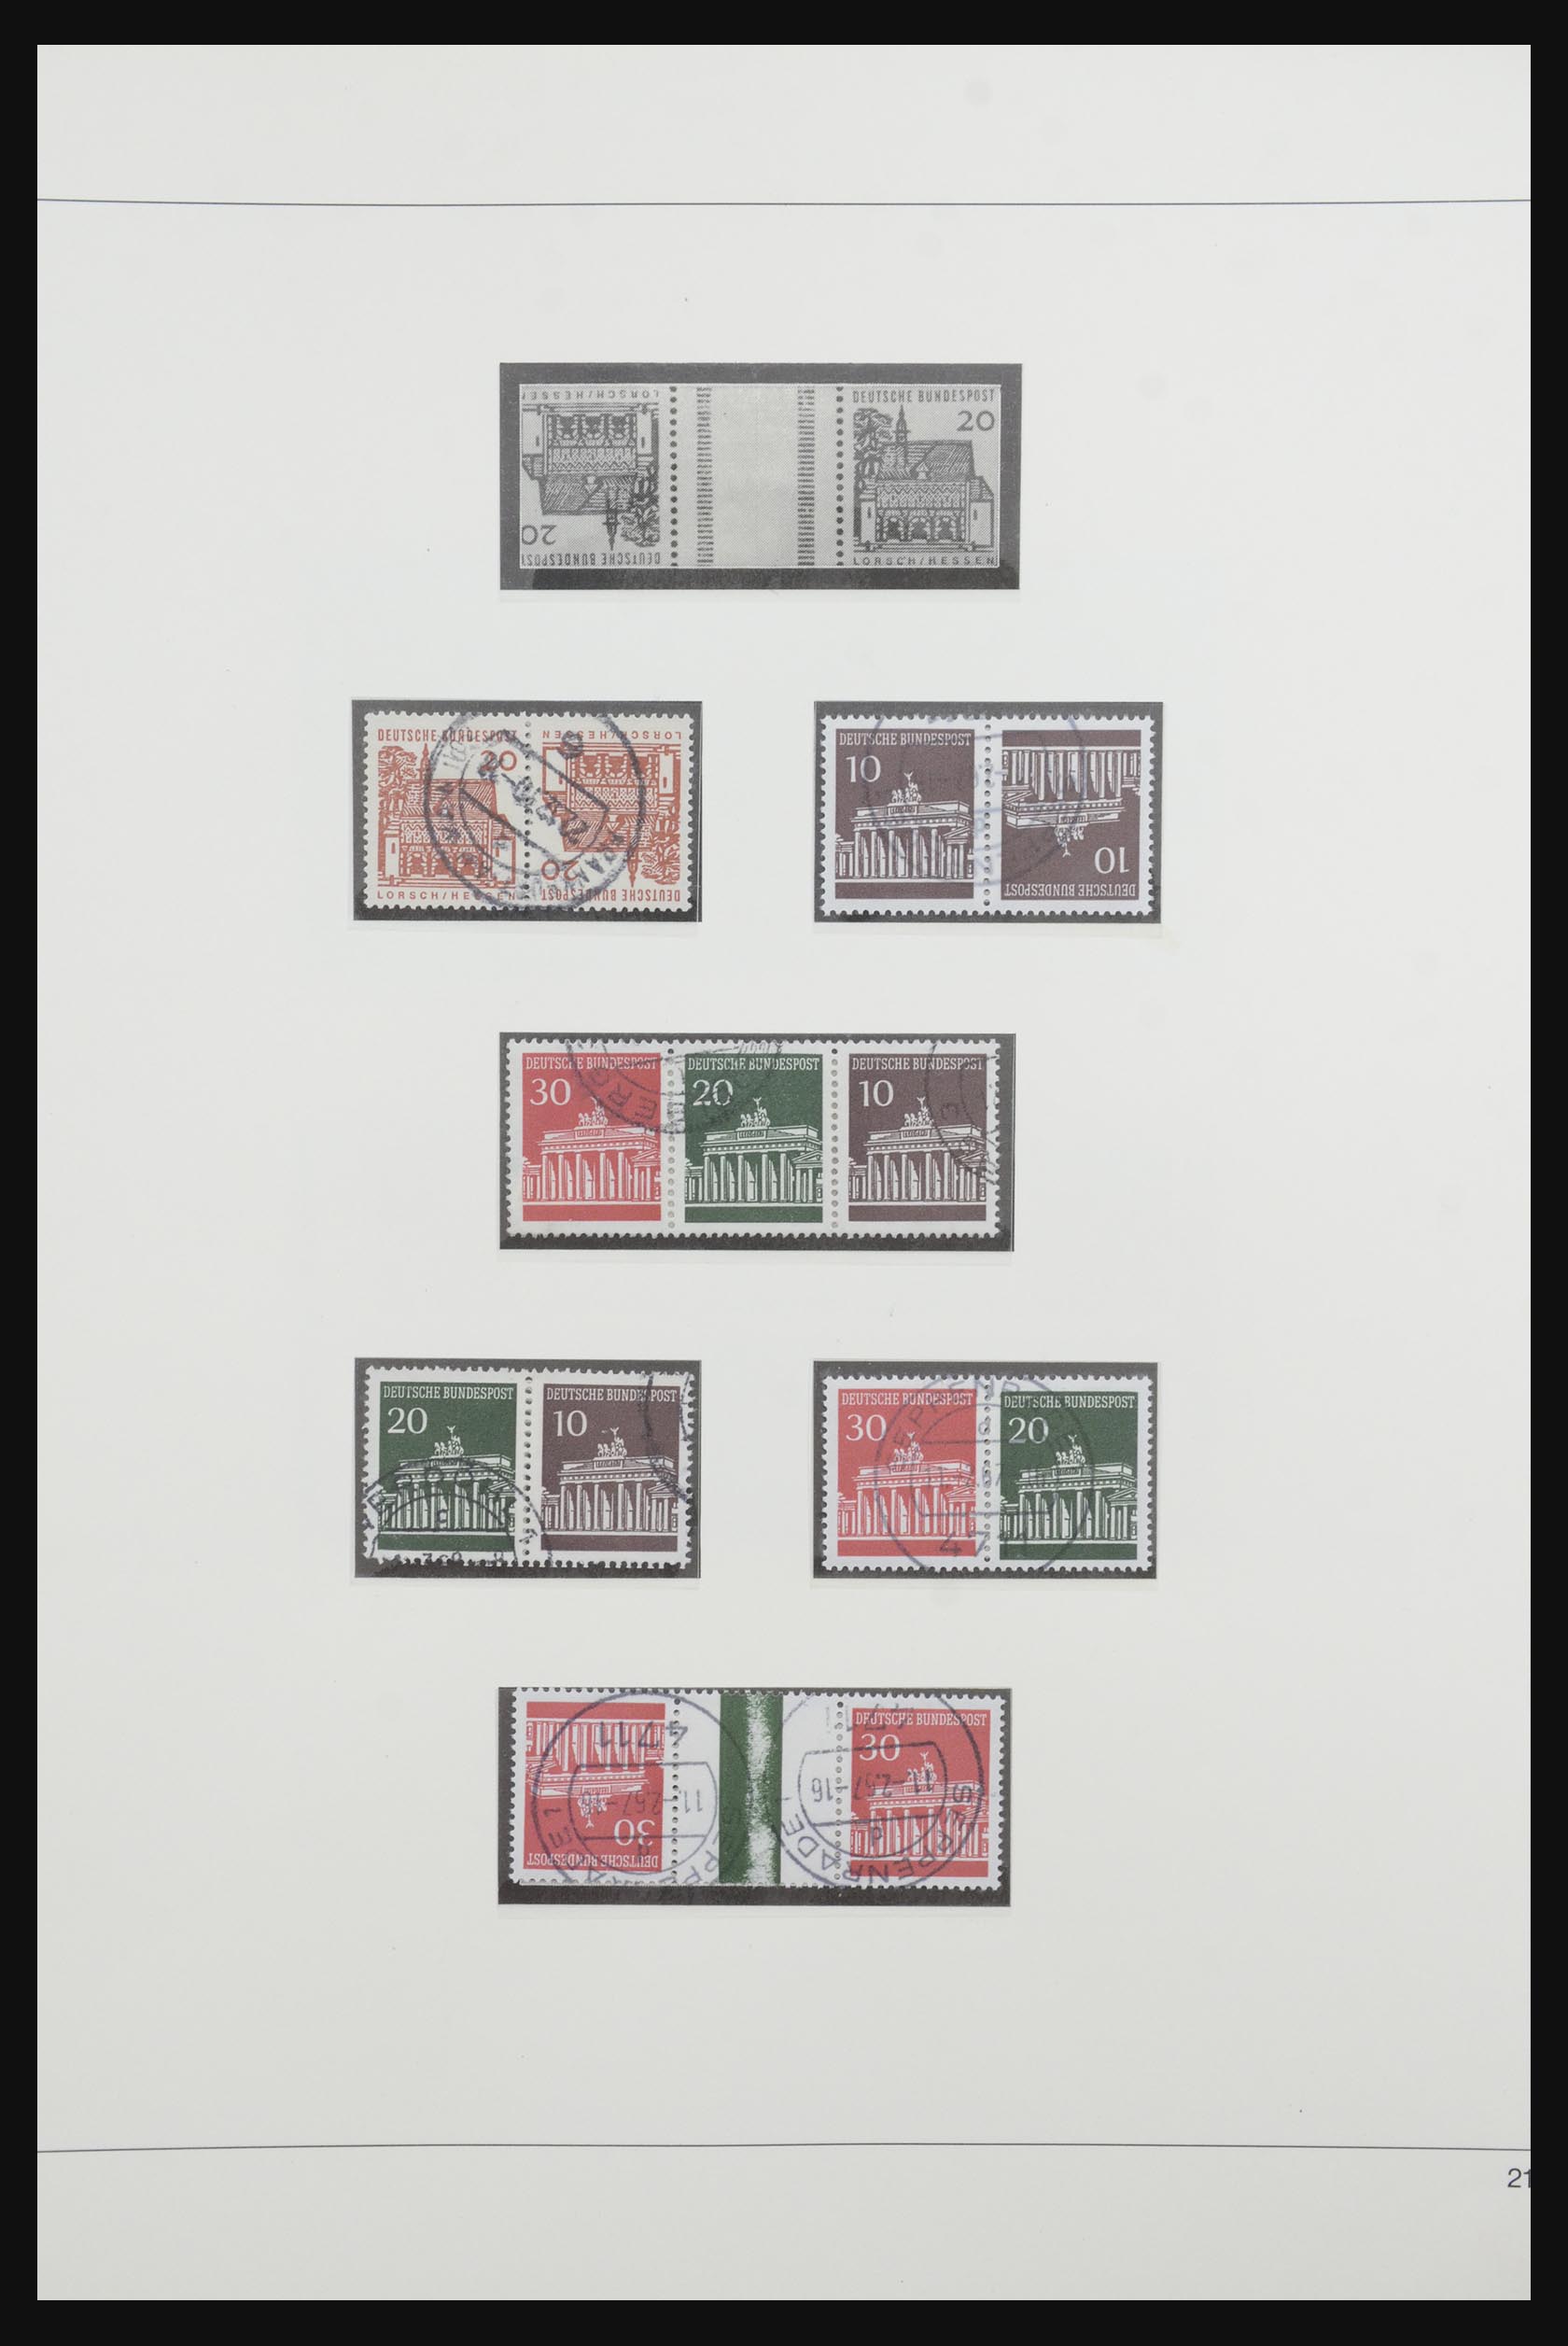 31842 029 - 31842 Bundespost combinations 1951-2003.